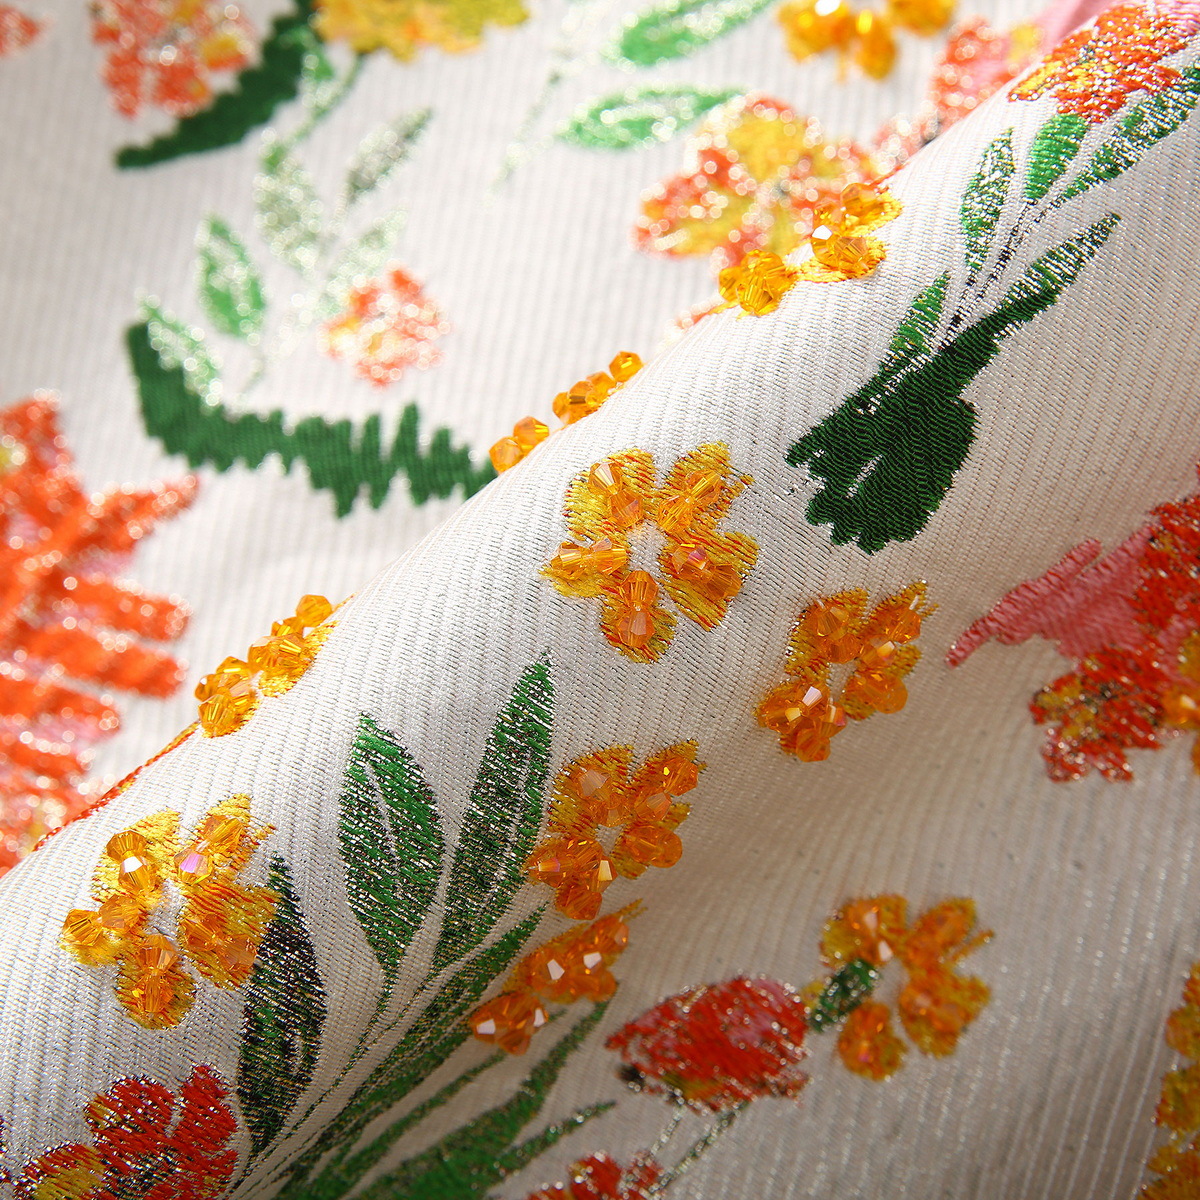 Printemps multicolore floral imprime jacquard robe sans manches rond randon roches courtes robes décontractées s4m150315